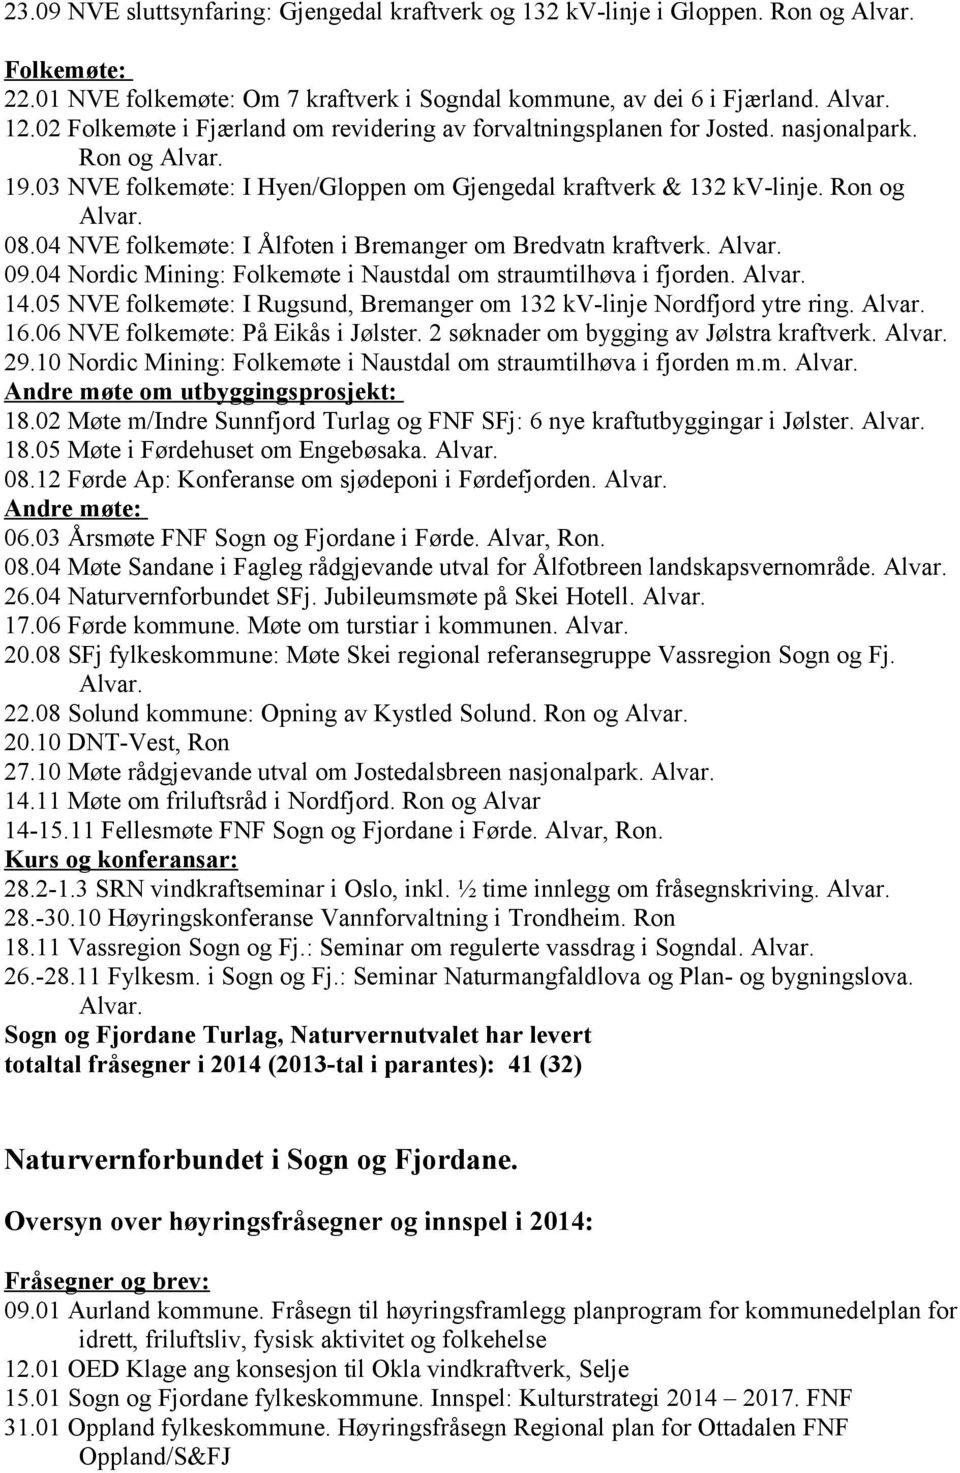 04 NVE folkemøte: I Ålfoten i Bremanger om Bredvatn kraftverk. Alvar. 09.04 Nordic Mining: Folkemøte i Naustdal om straumtilhøva i fjorden. Alvar. 14.